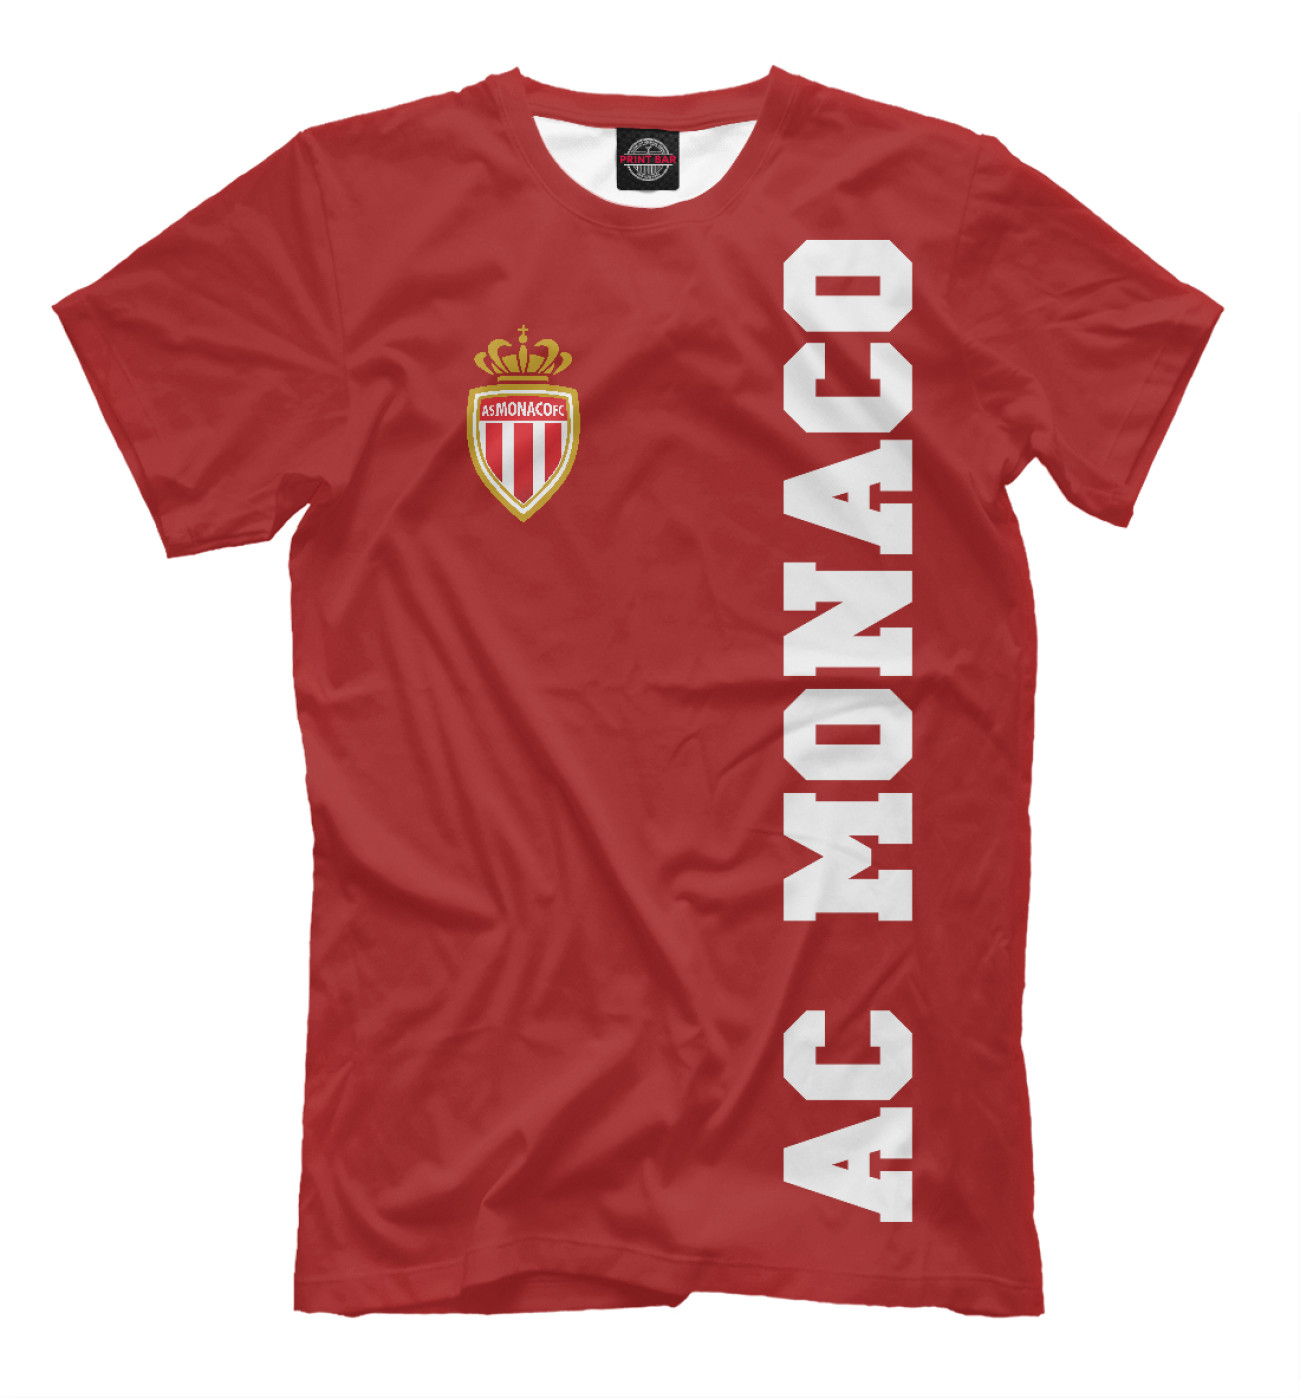 Мужская Футболка AC Monaco FC, артикул: FTO-424434-fut-2